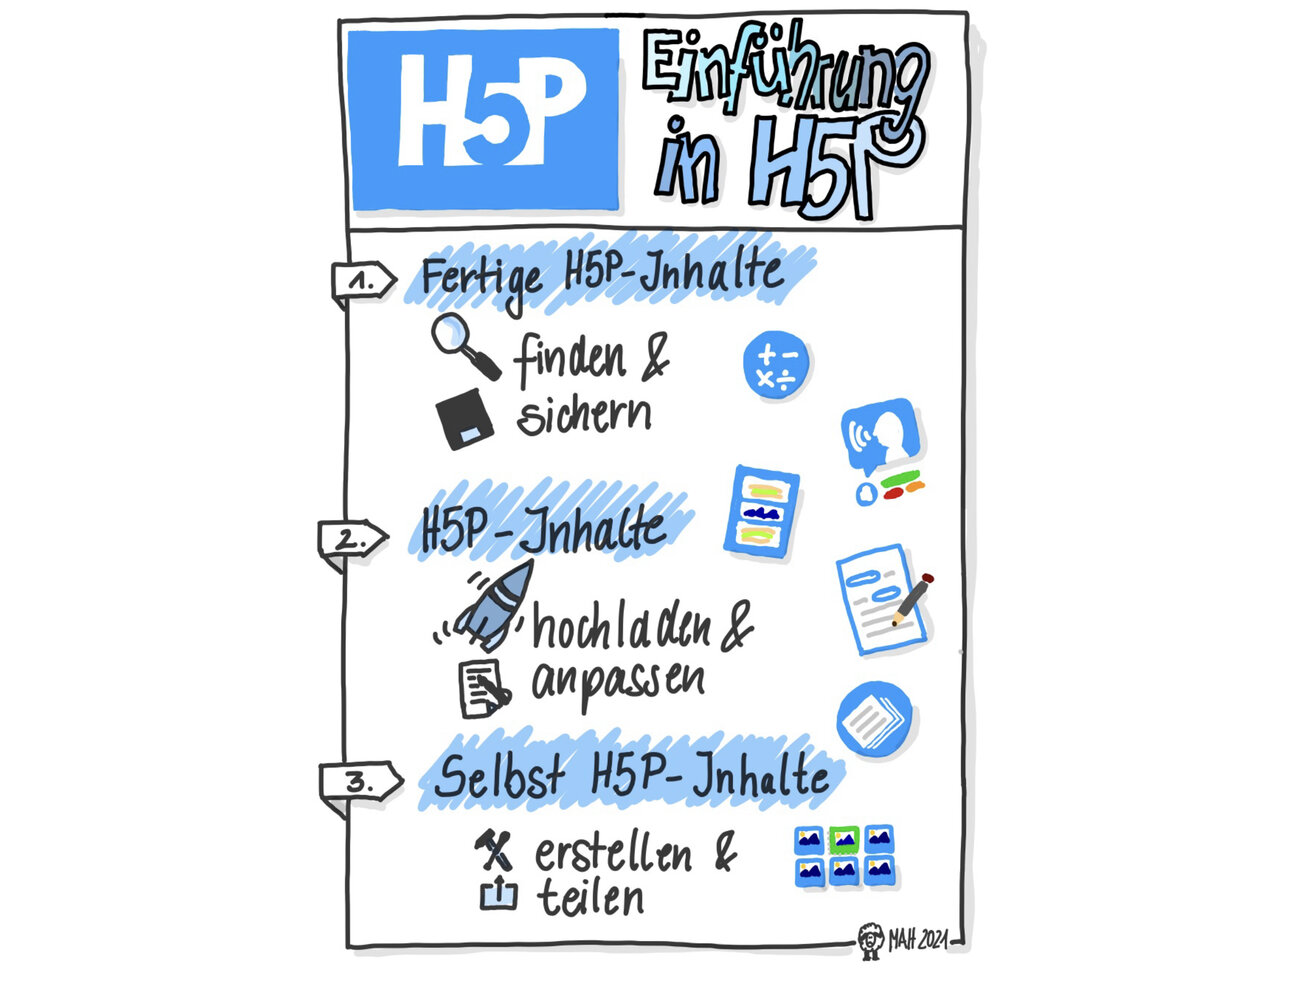 Wachsende Sammlung mit H5P-Quellen und Ideen